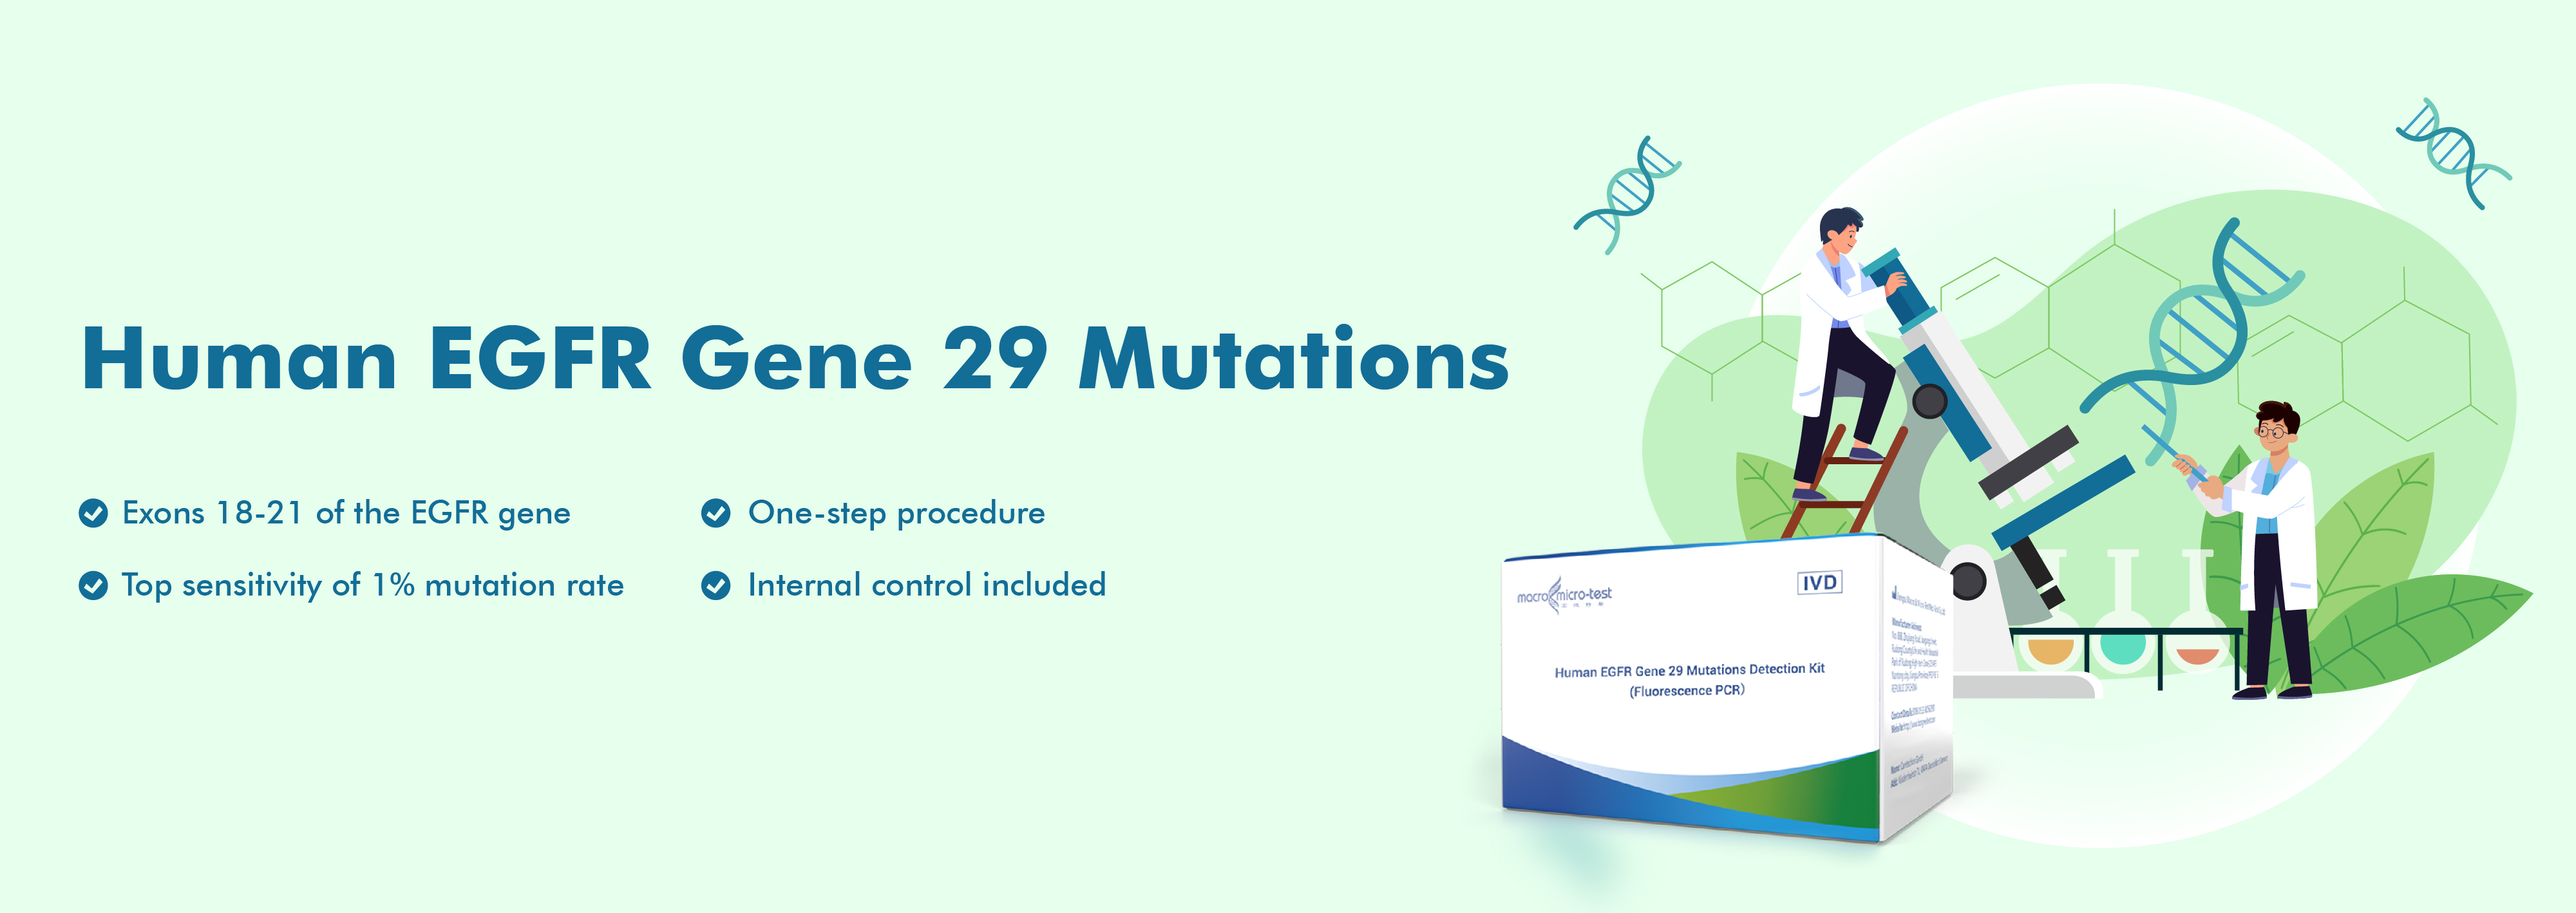 Human EGFR Gene 29 Mutations